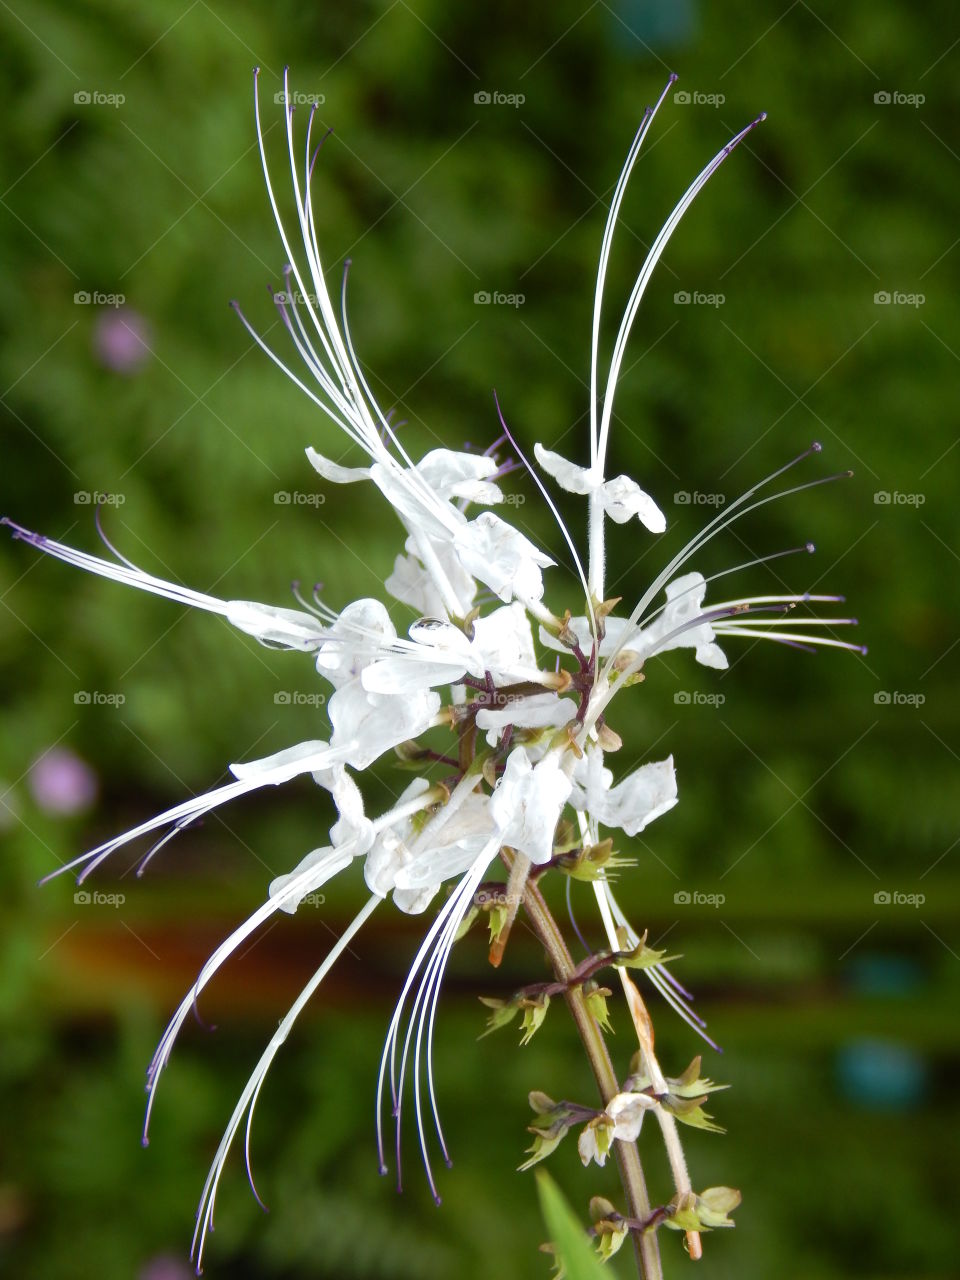 cat whiskers flower